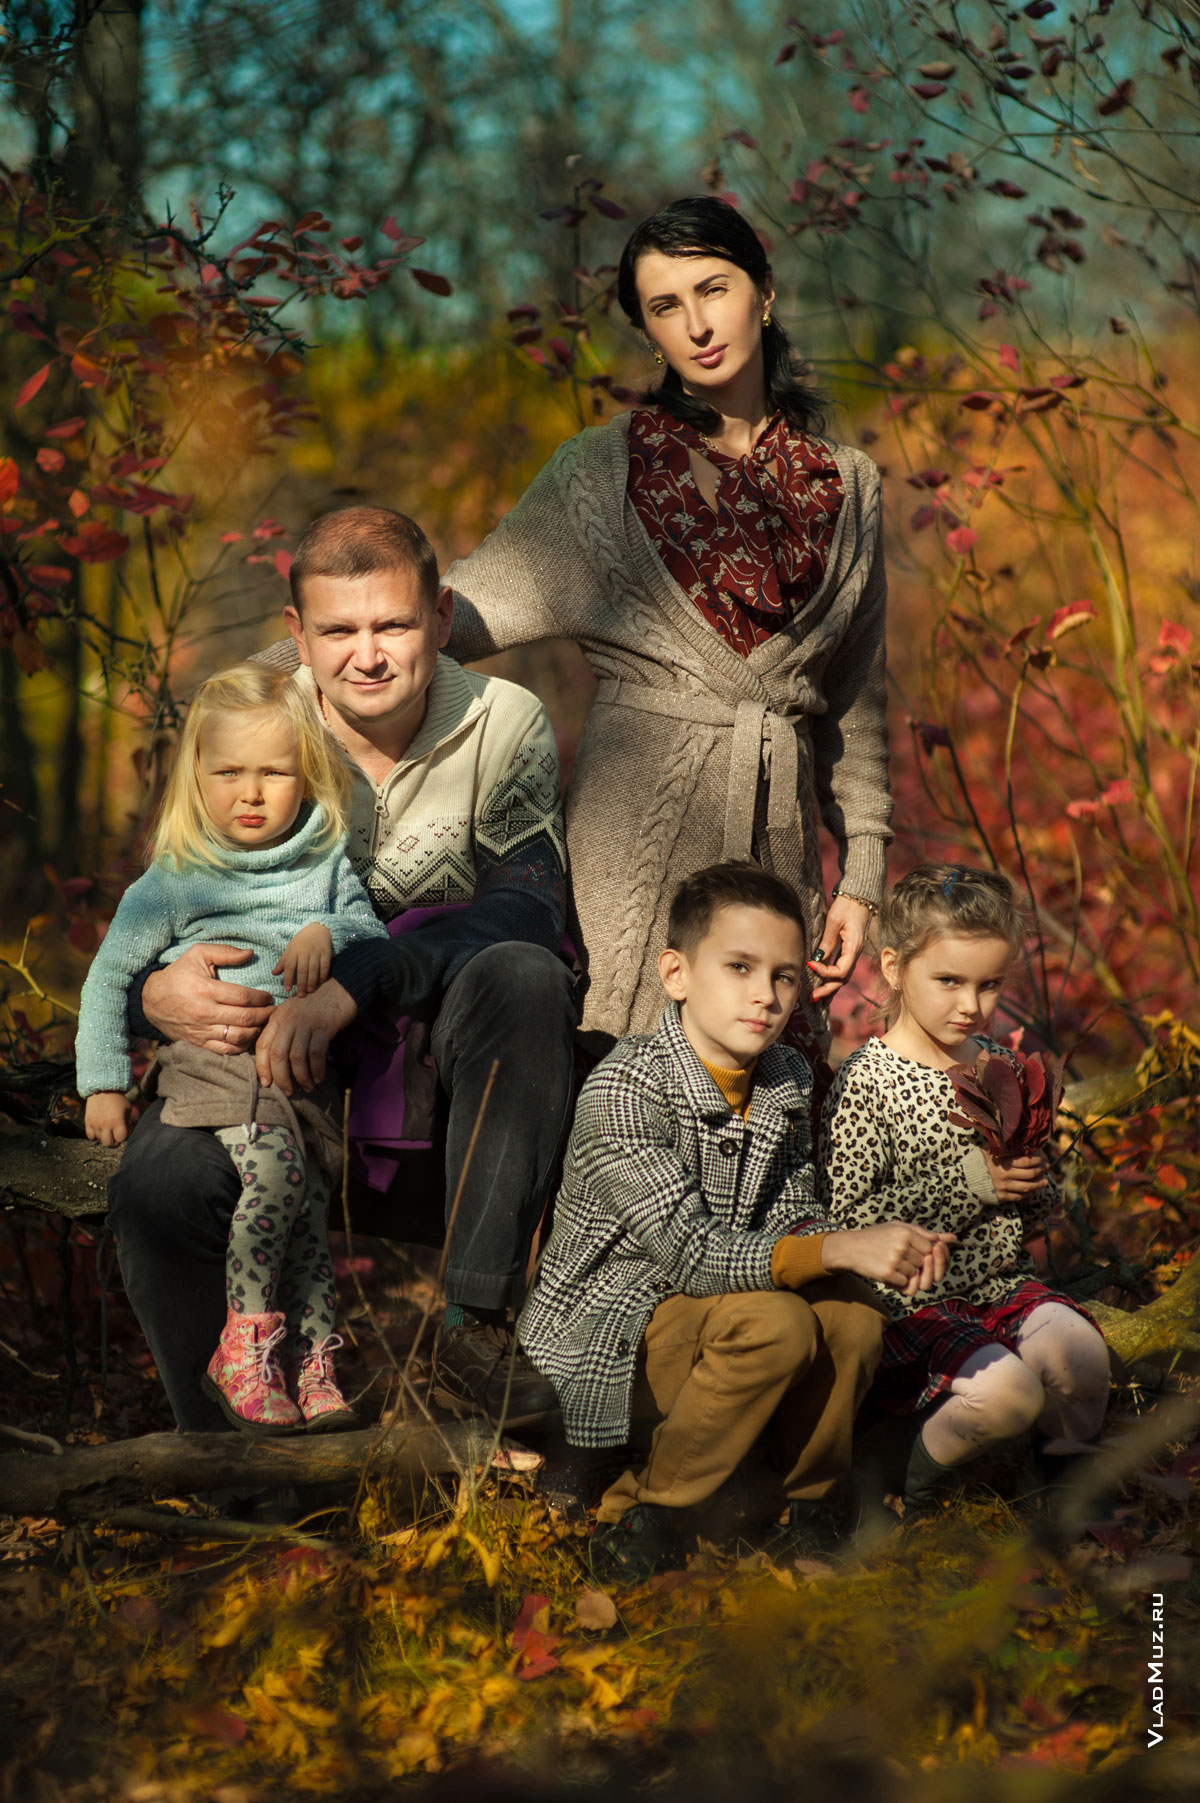 Осеннее фото семьи из 5-ти человек: фото родителей, мальчика и 2-х девочек